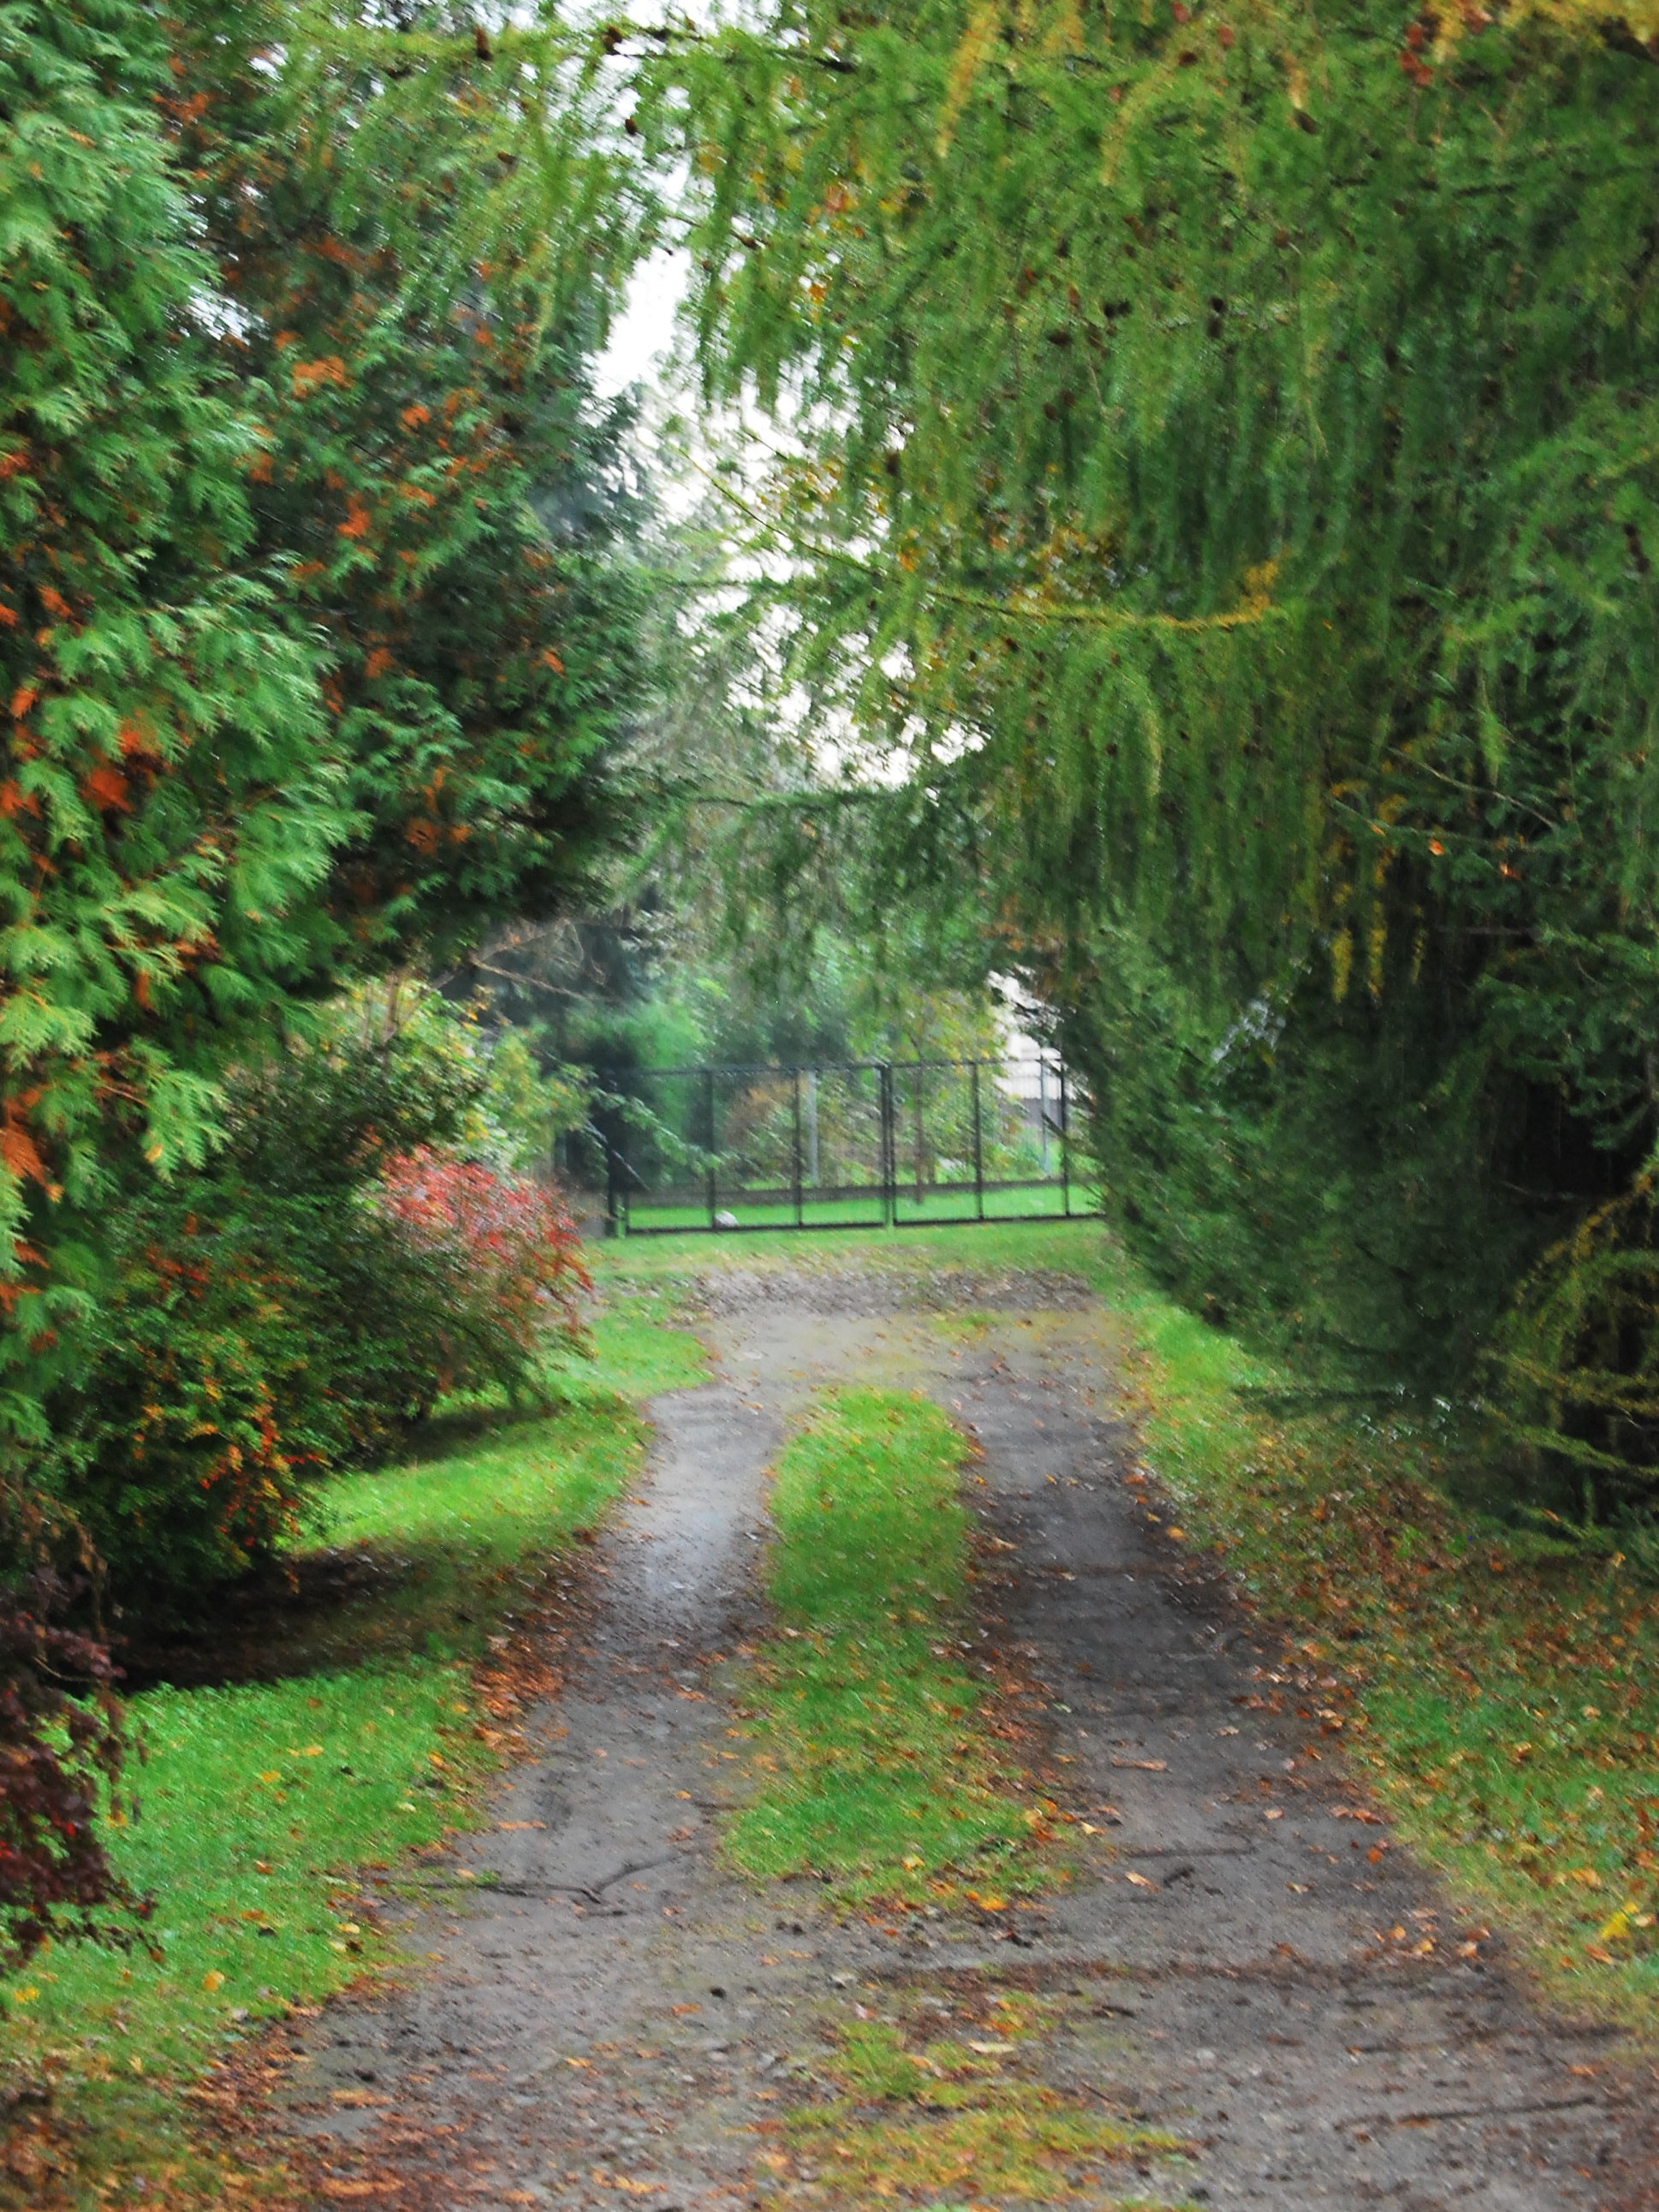 20 października - Dzień Krajobrazu | Fragment nieutwardzonej drogi porośniętej trawą, na trawie trochę jesiennych liści. Po obu stronach duże drzewa i krzewy. Droga kończy się metalowym ogrodzeniem, za nim również widoczna zieleń..JPG